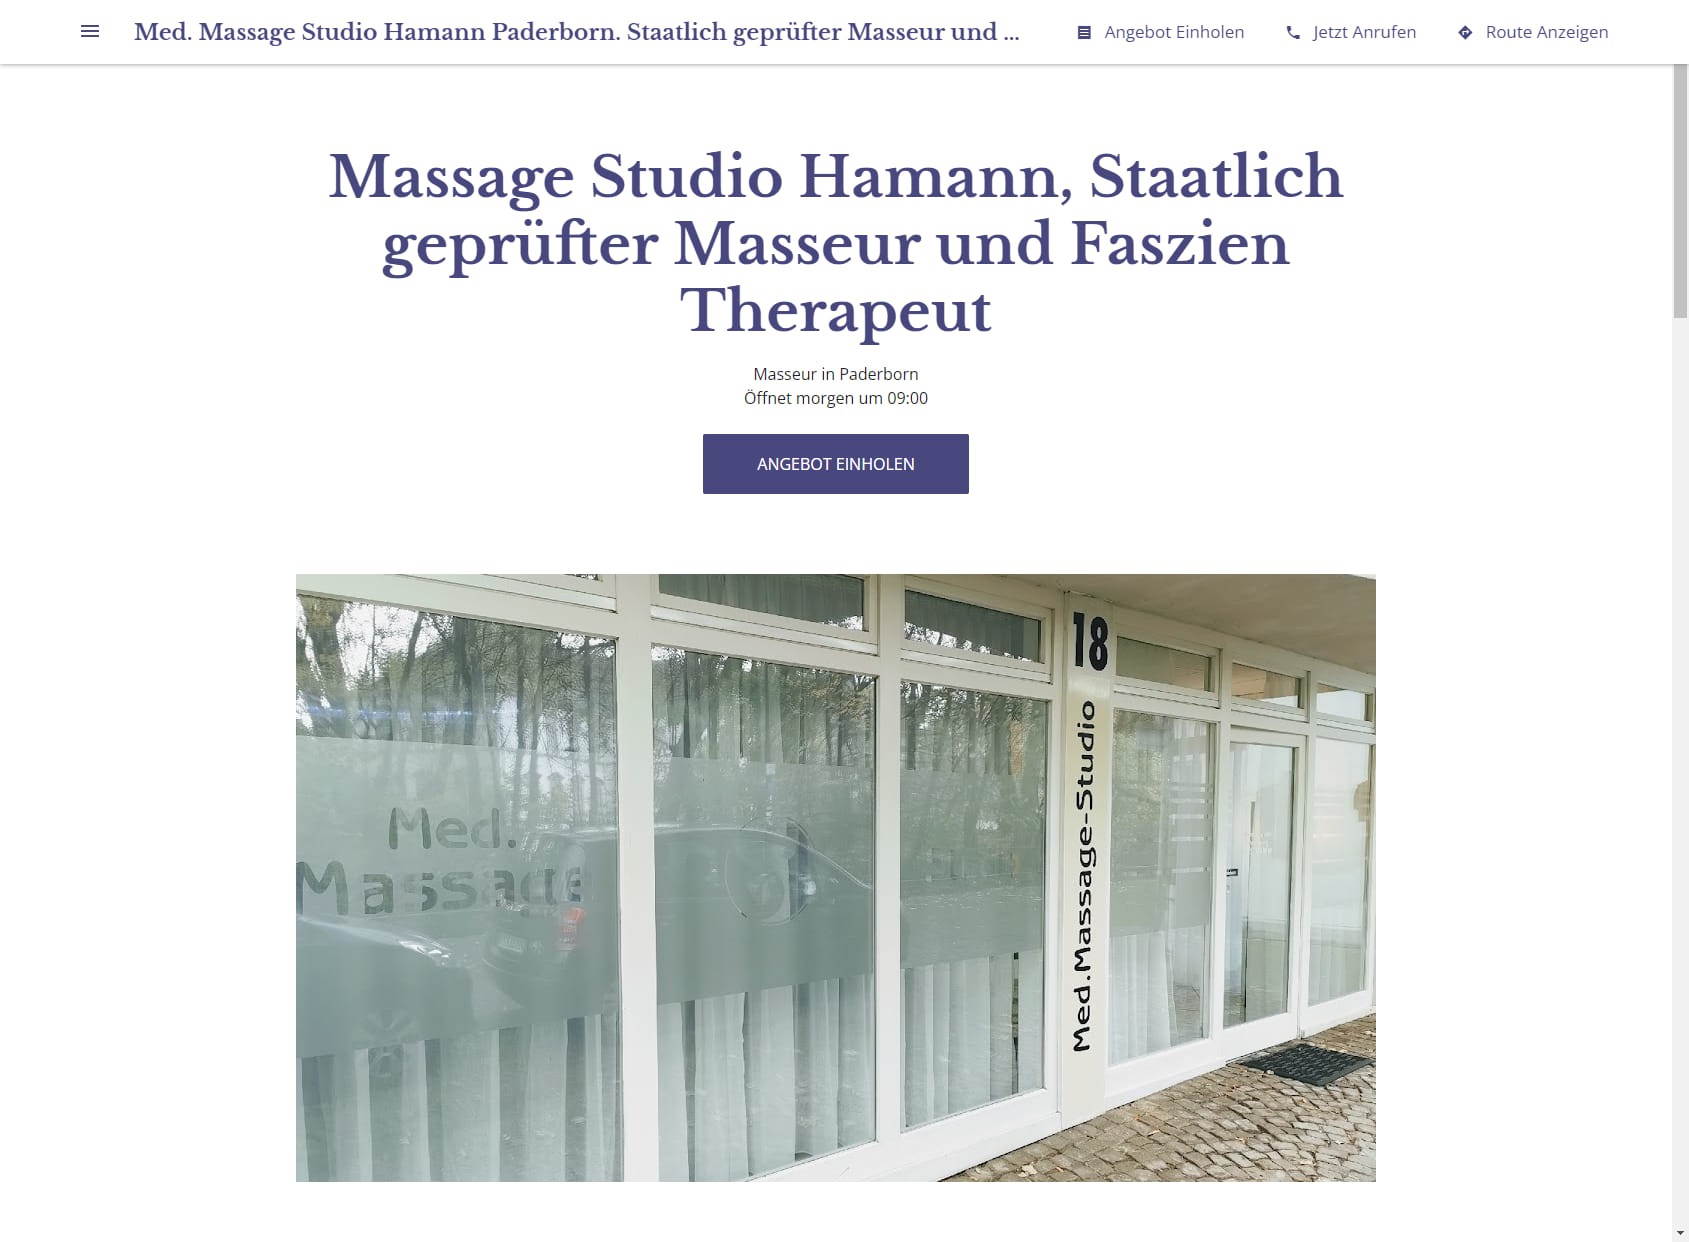 Med. Massage Studio Hamann Paderborn. Staatlich geprüfter Masseur und Faszien Therapeut( Rolfing)